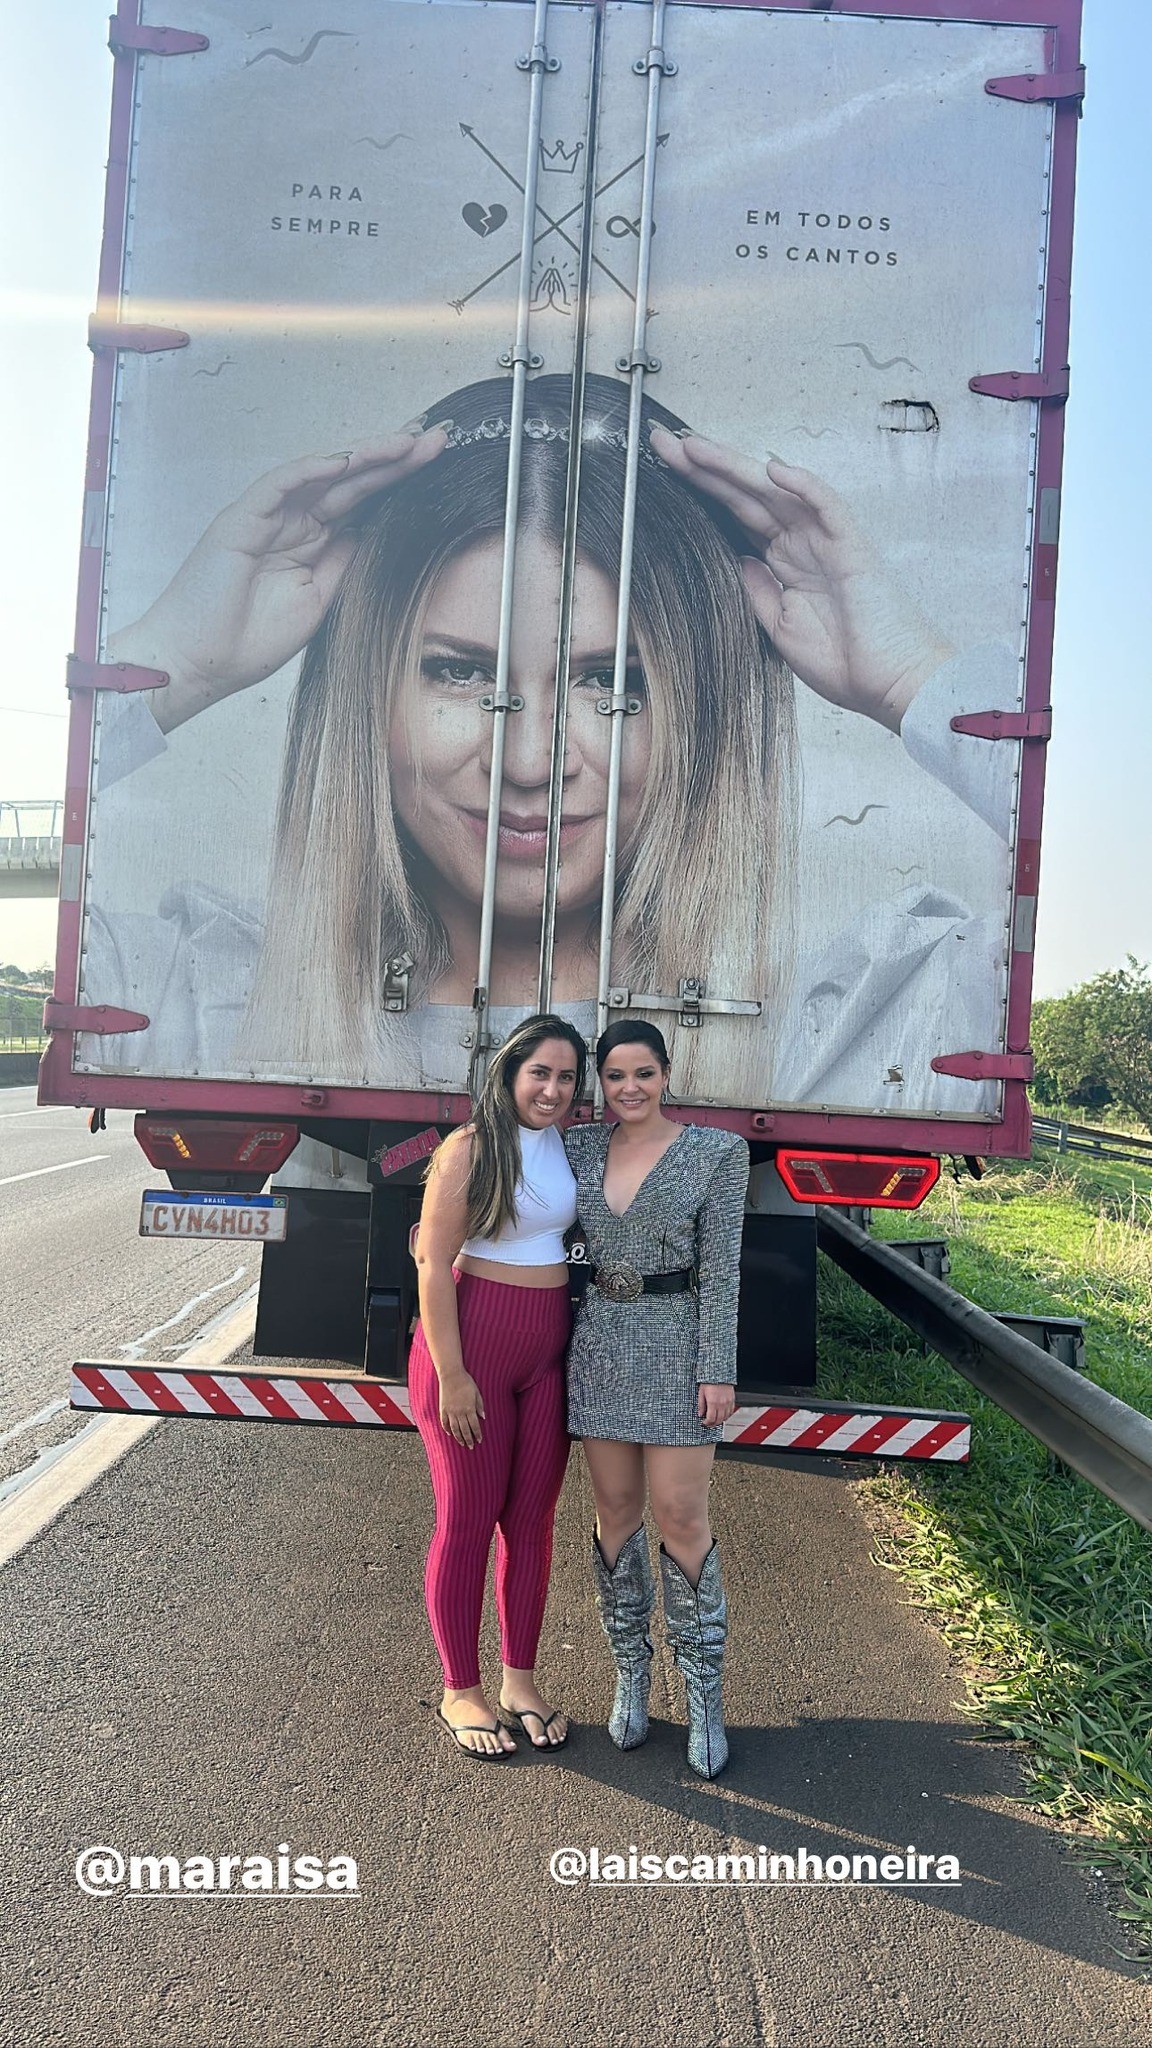 Caminhoneira parada por Maraísa diz que adesivo em caminhão foi forma de levar Marília 'para todos os cantos'